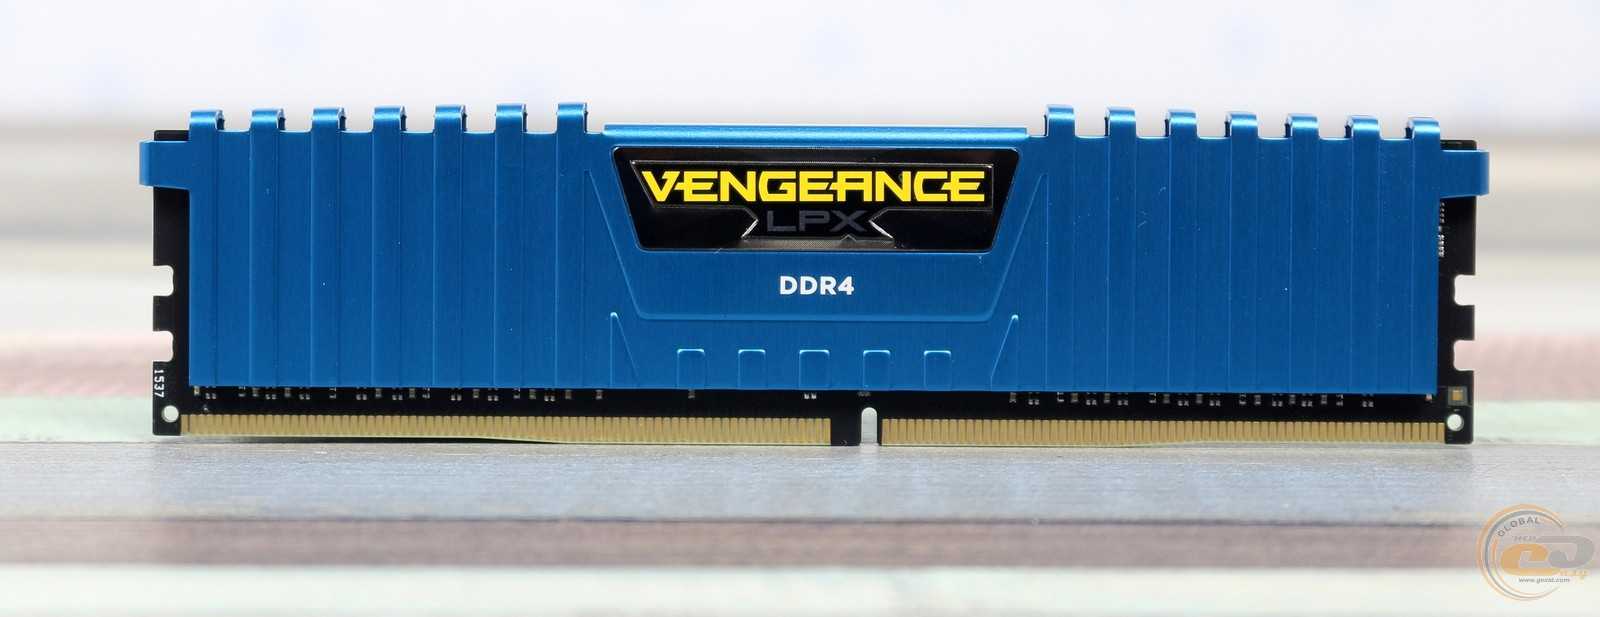 Обзор и тест оперативной памяти 2x8 гбайт ddr4-2666 corsair vengeance rgb pro (cmw16gx4m2a2666c16) — i2hard